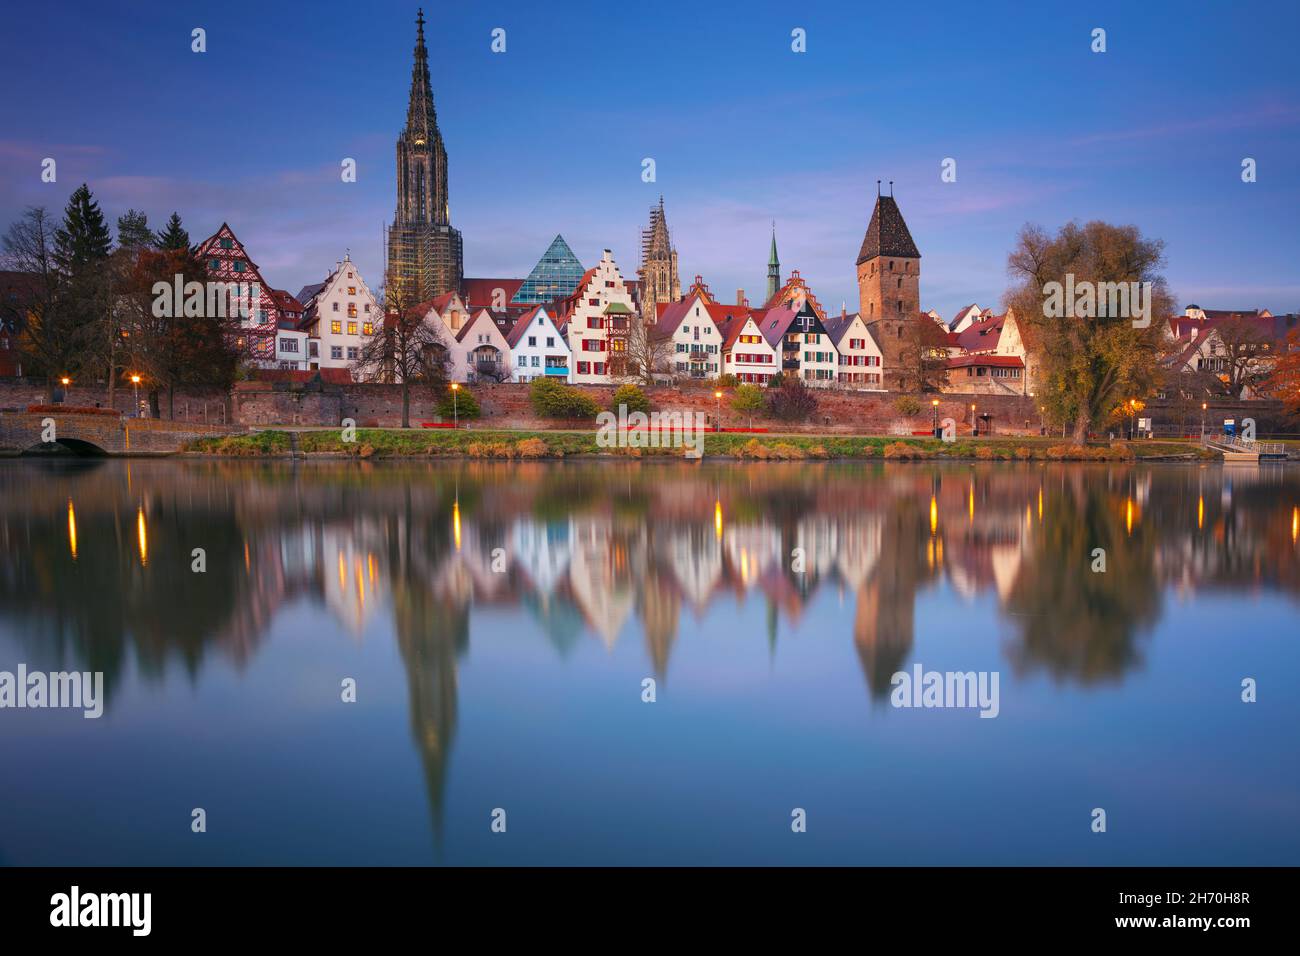 Ulm, allemand.Image du paysage urbain de la vieille ville d'Ulm, en Allemagne avec la cathédrale d'Ulm, la plus haute église du monde et le reflet de la ville dans le Danube à Banque D'Images